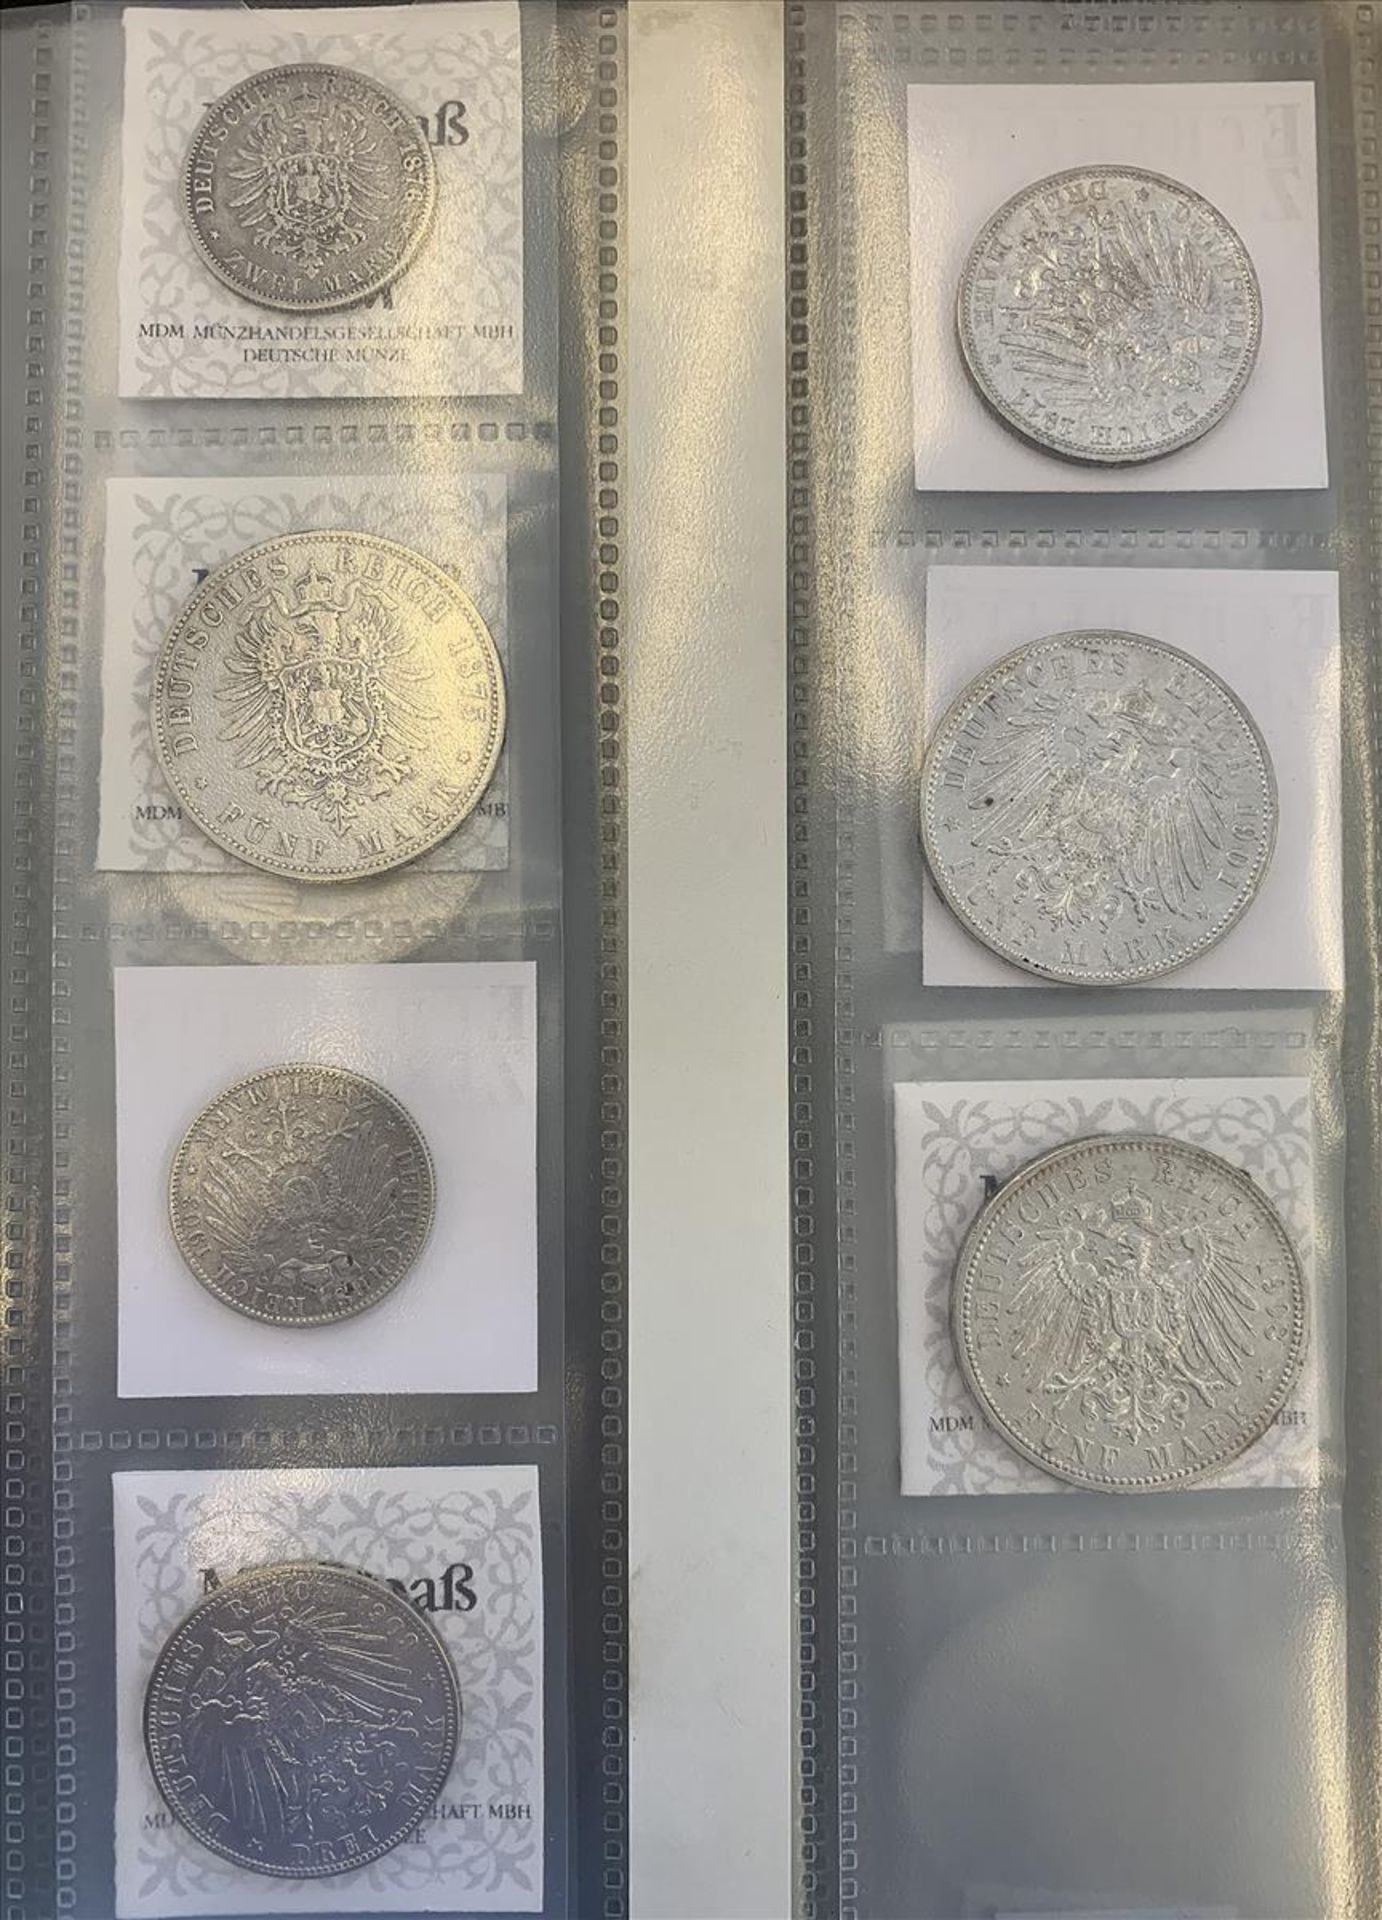 Hamburg, Freie und Hansestadt, Sammlung von sieben Silbermünzen:2 Mark 1876 und 1903, 3 Mark 1909